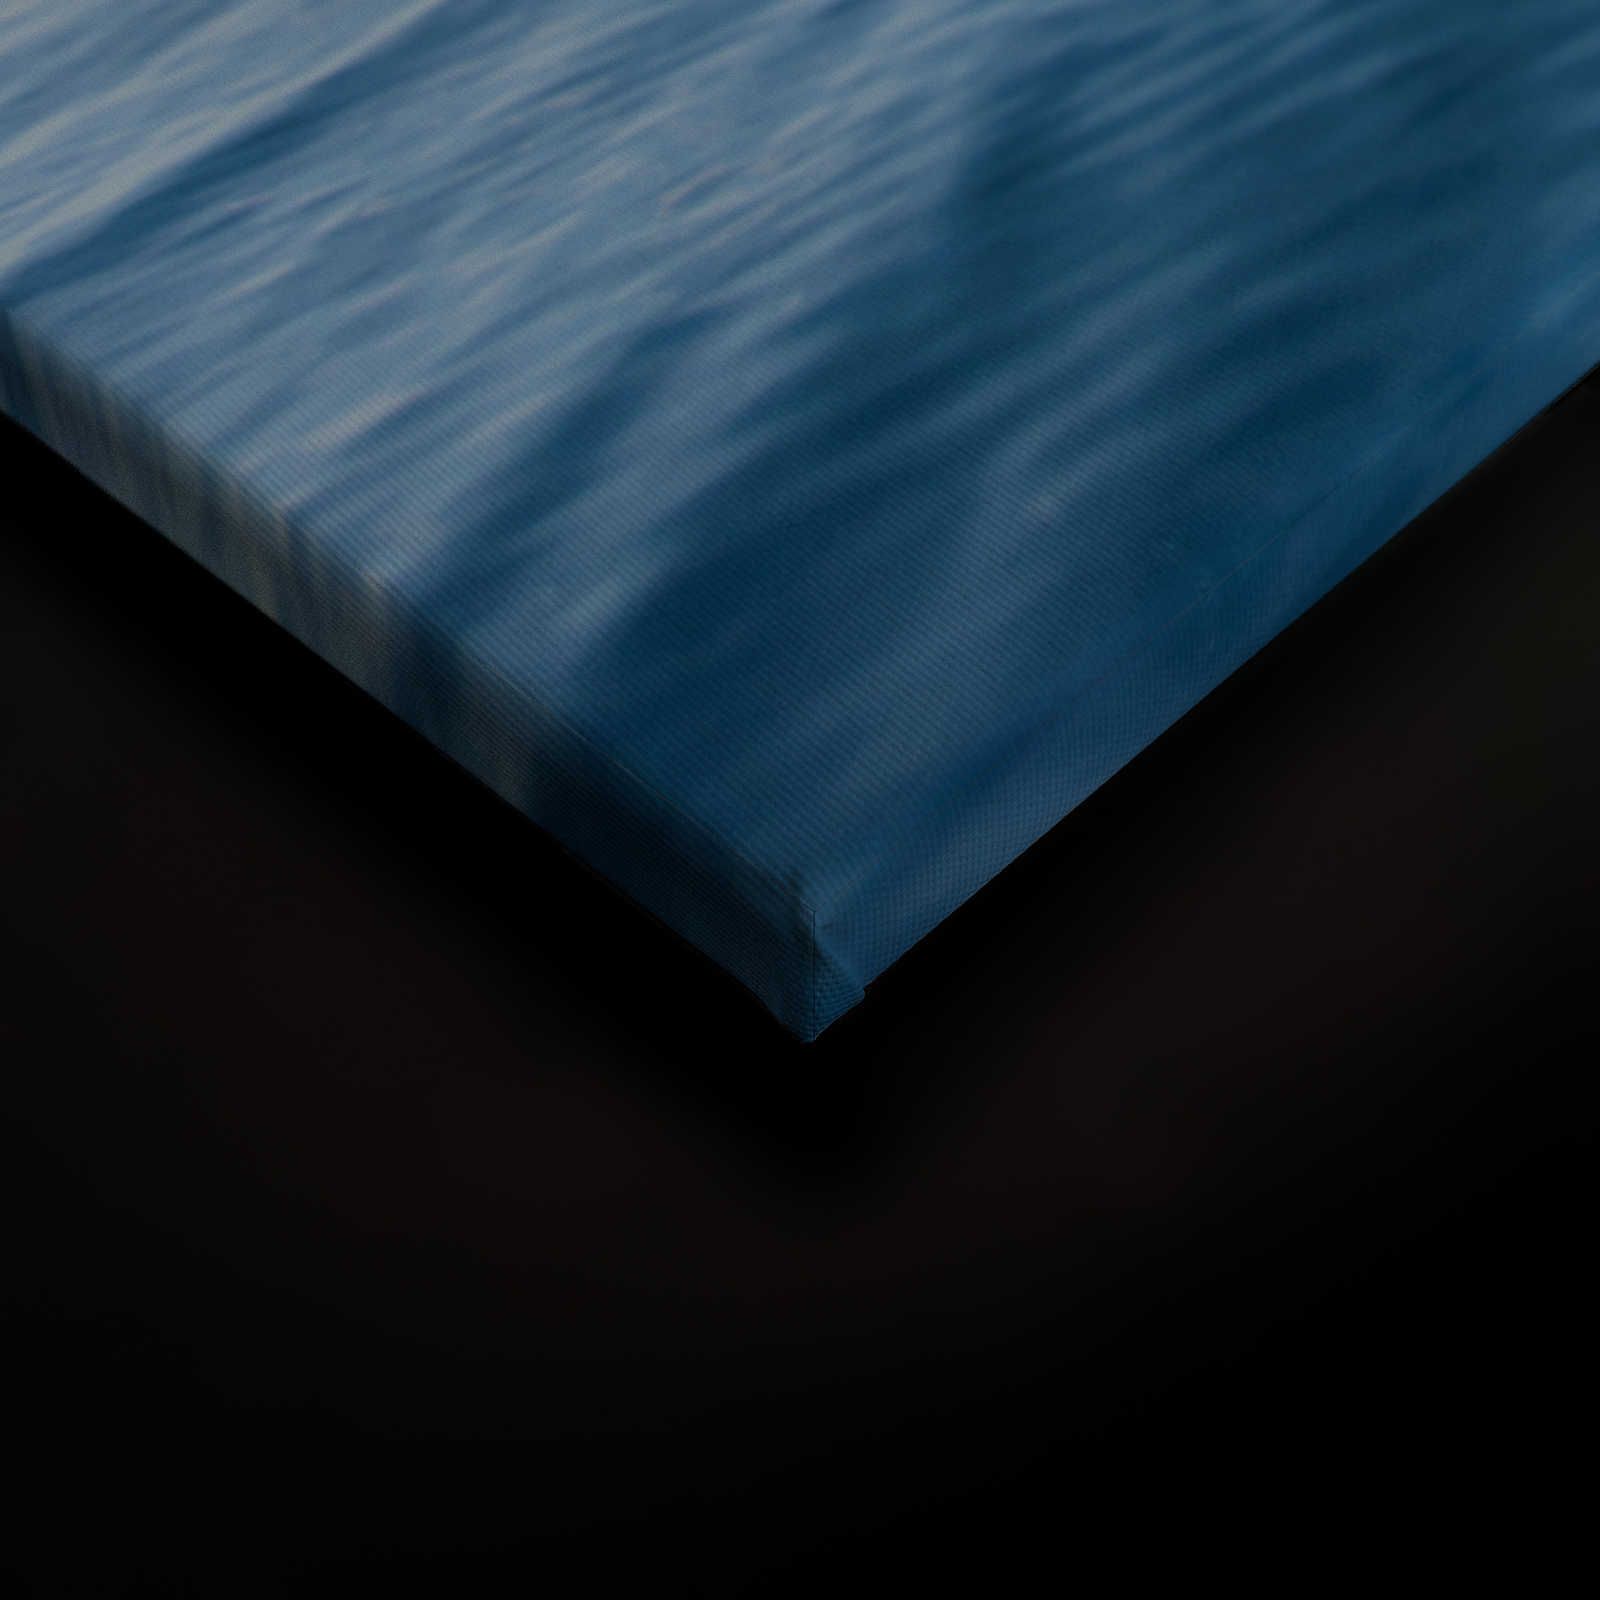             Canvas schilderij open zee met wolken - 1,20 m x 0,80 m
        